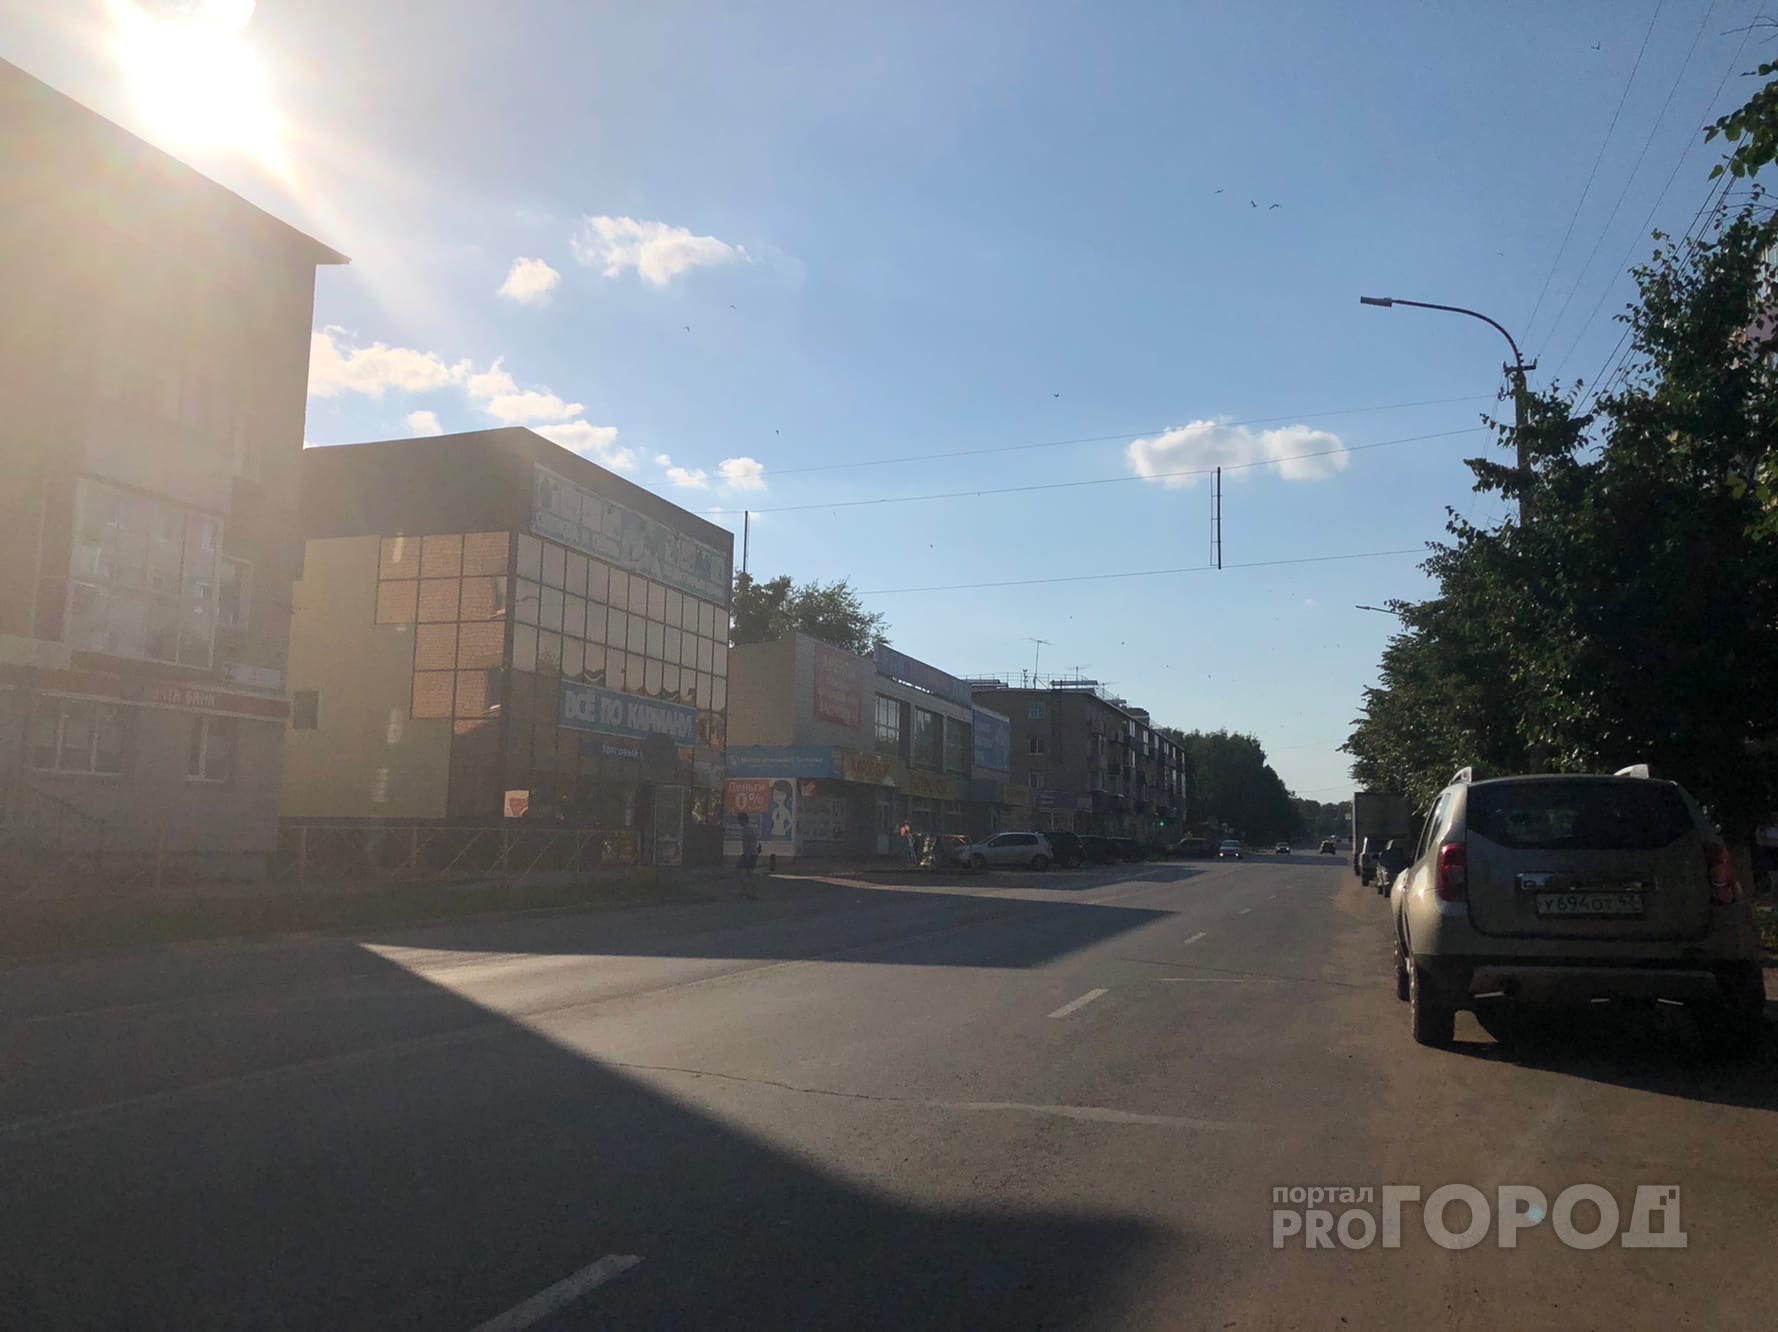 Опубликован прогноз погоды в Кирово-Чепецке на сентябрь 2020 года